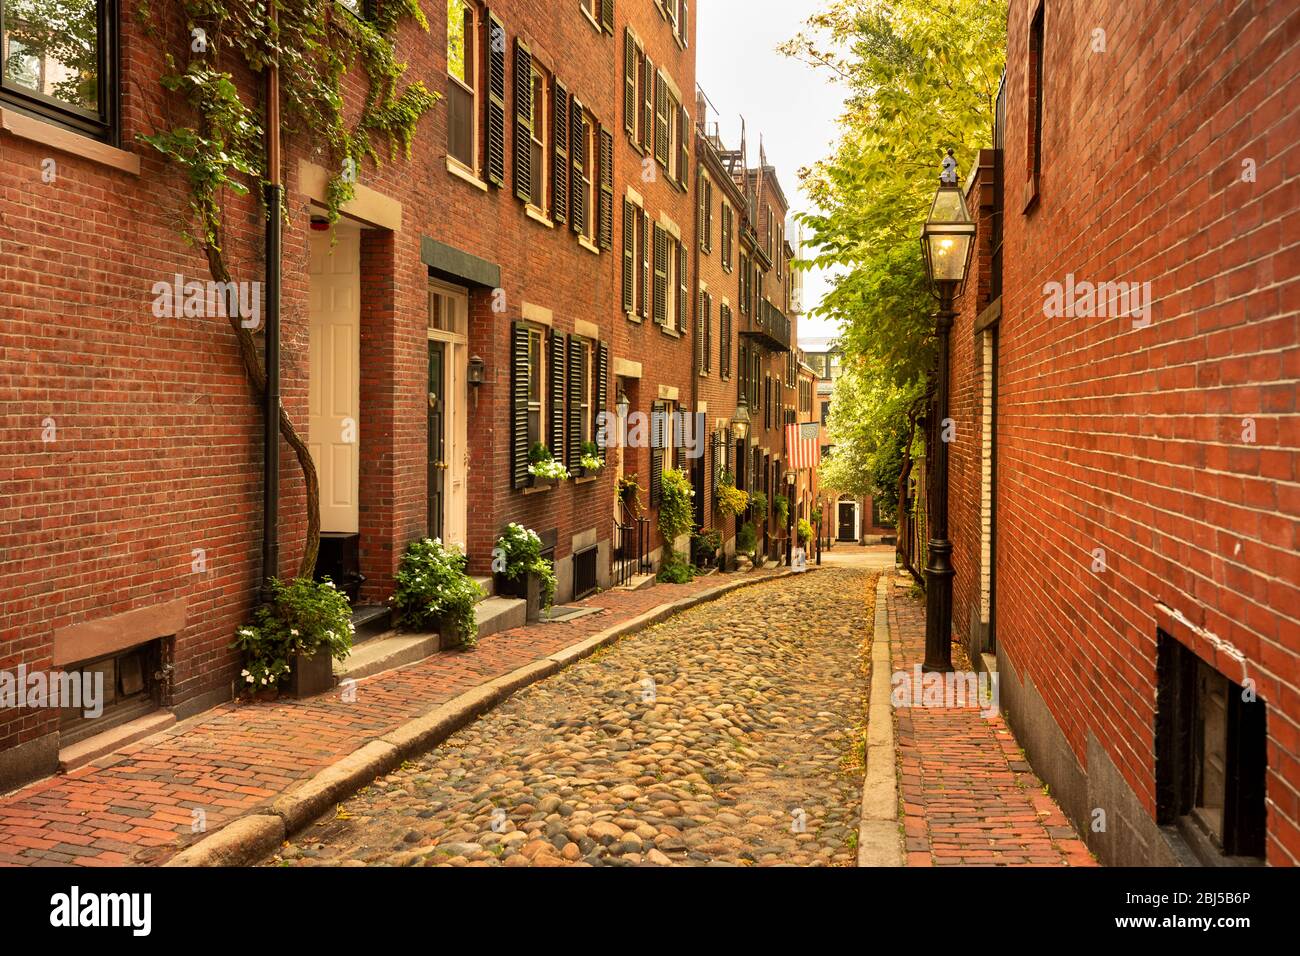 Historical Acorn street in the Beacon Hill neighbourhood of Boston, Massachusetts Stock Photo